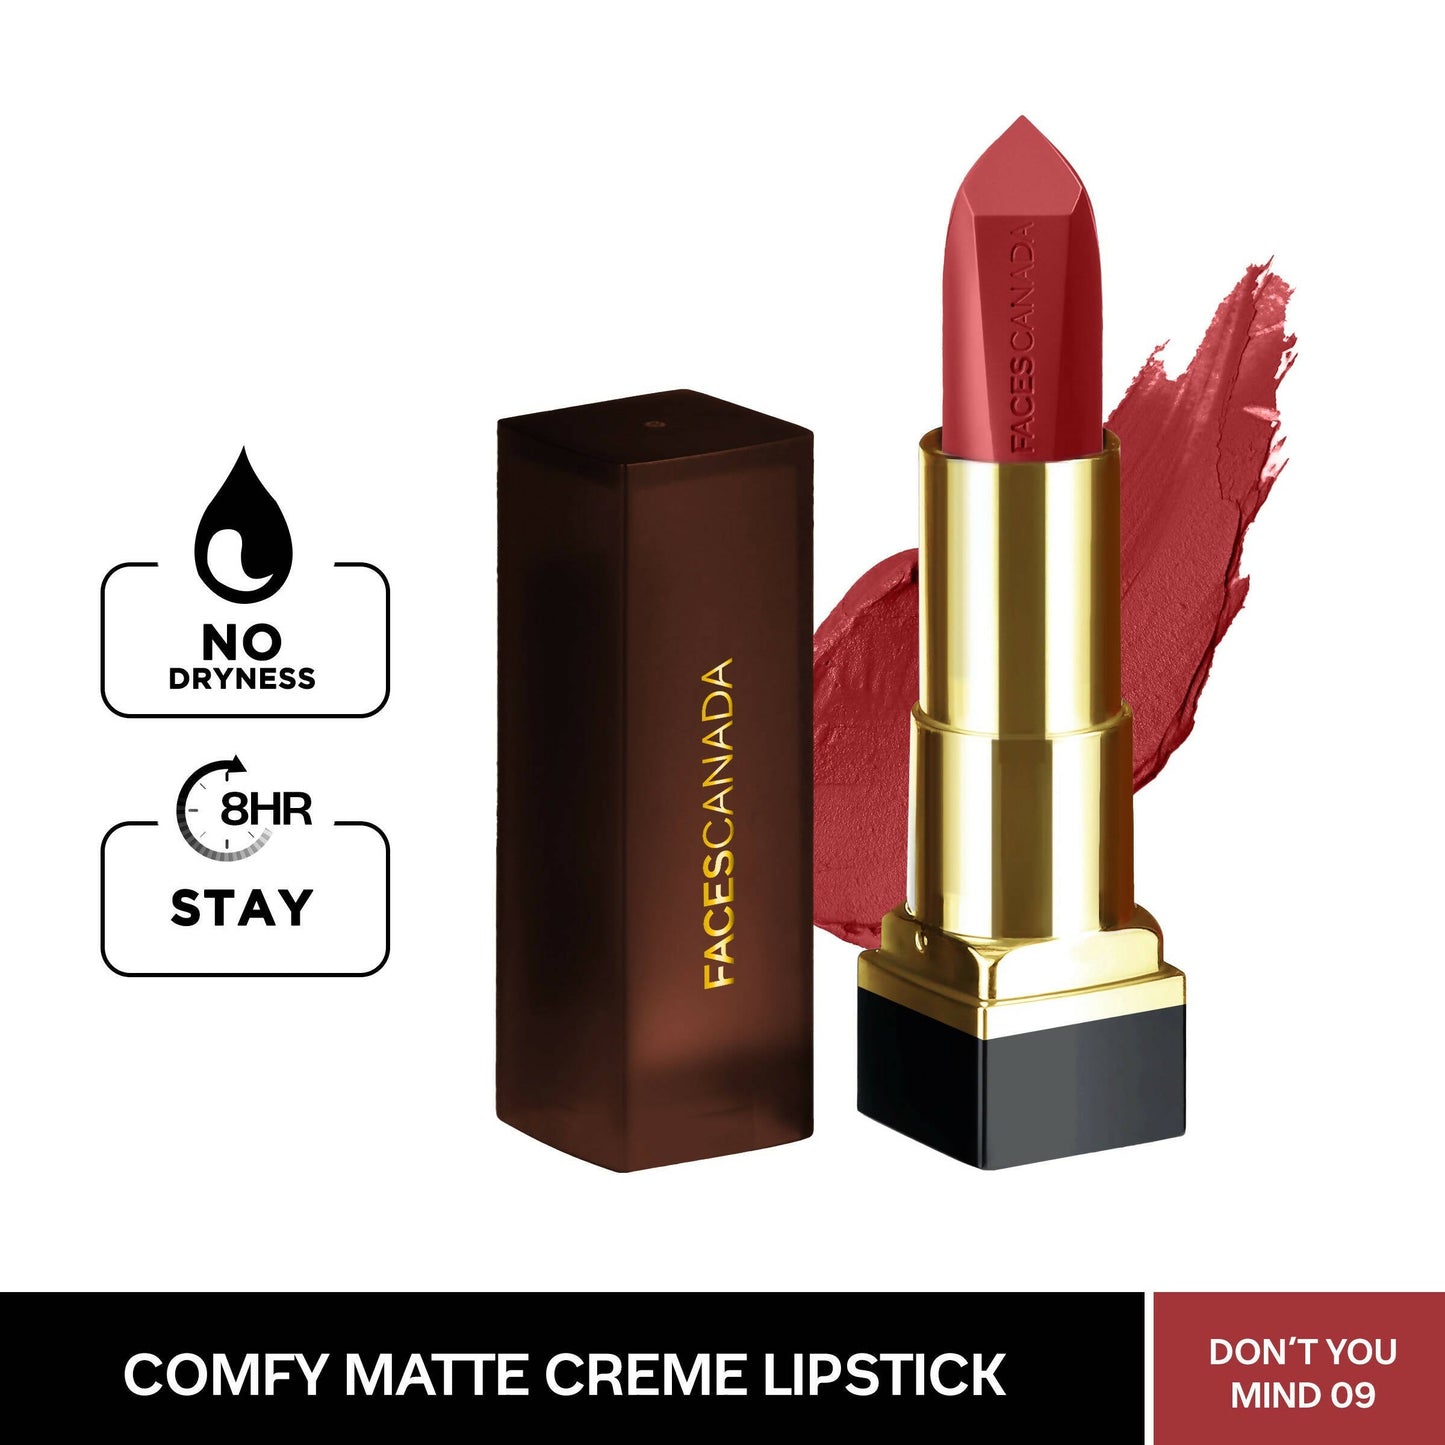 Faces Canada Comfy Matte Creme Lipstick - Don't You Mind 09